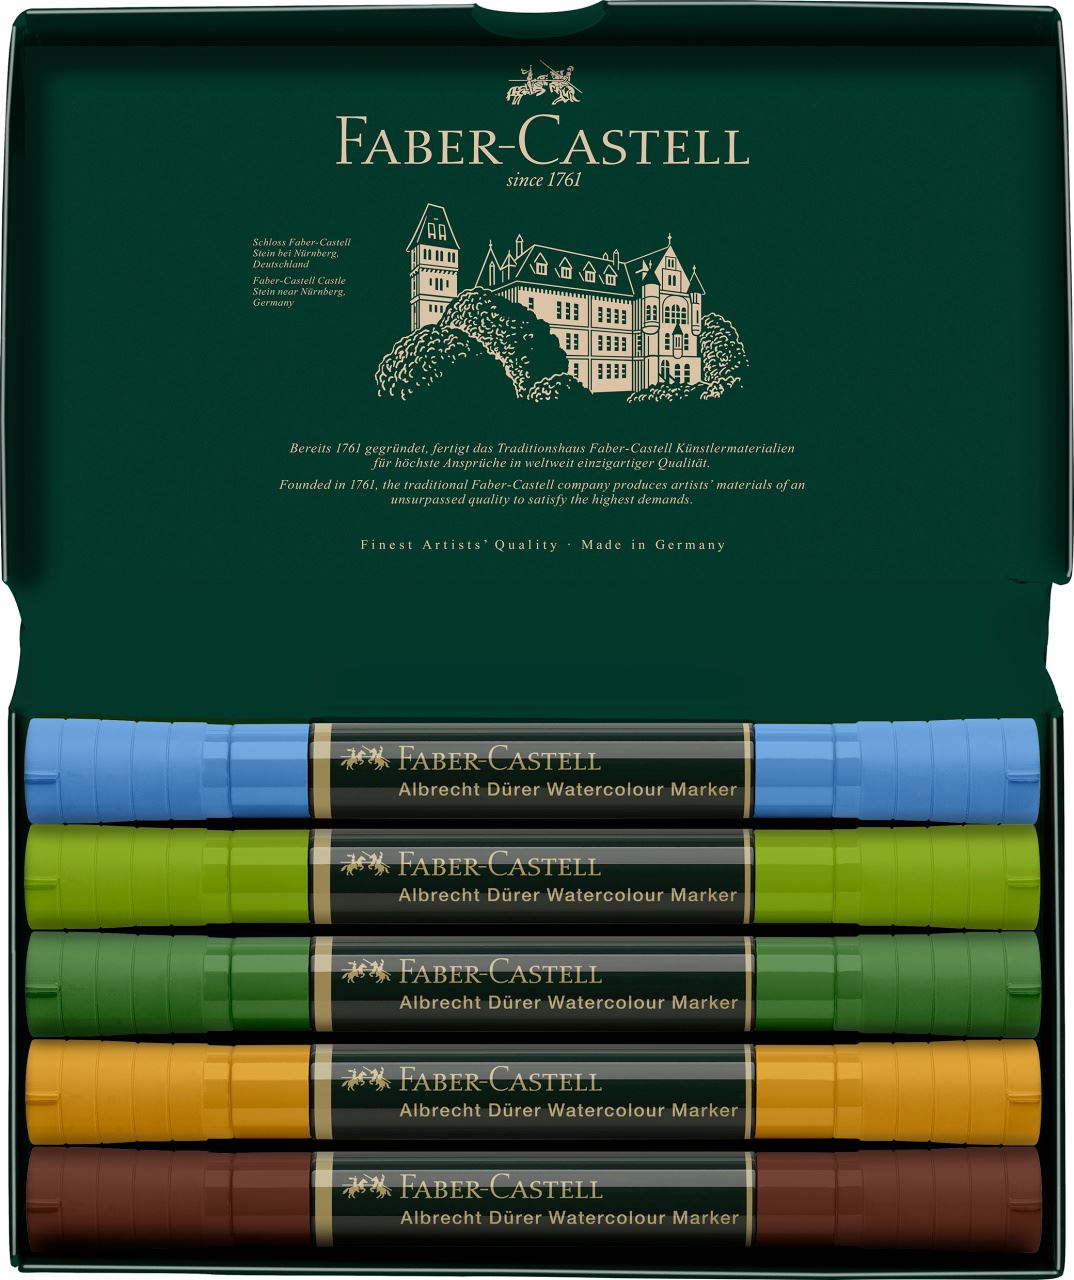 Faber-Castell - Estuche con 5 marcadores acuarelables A.Dürer, plenairismo